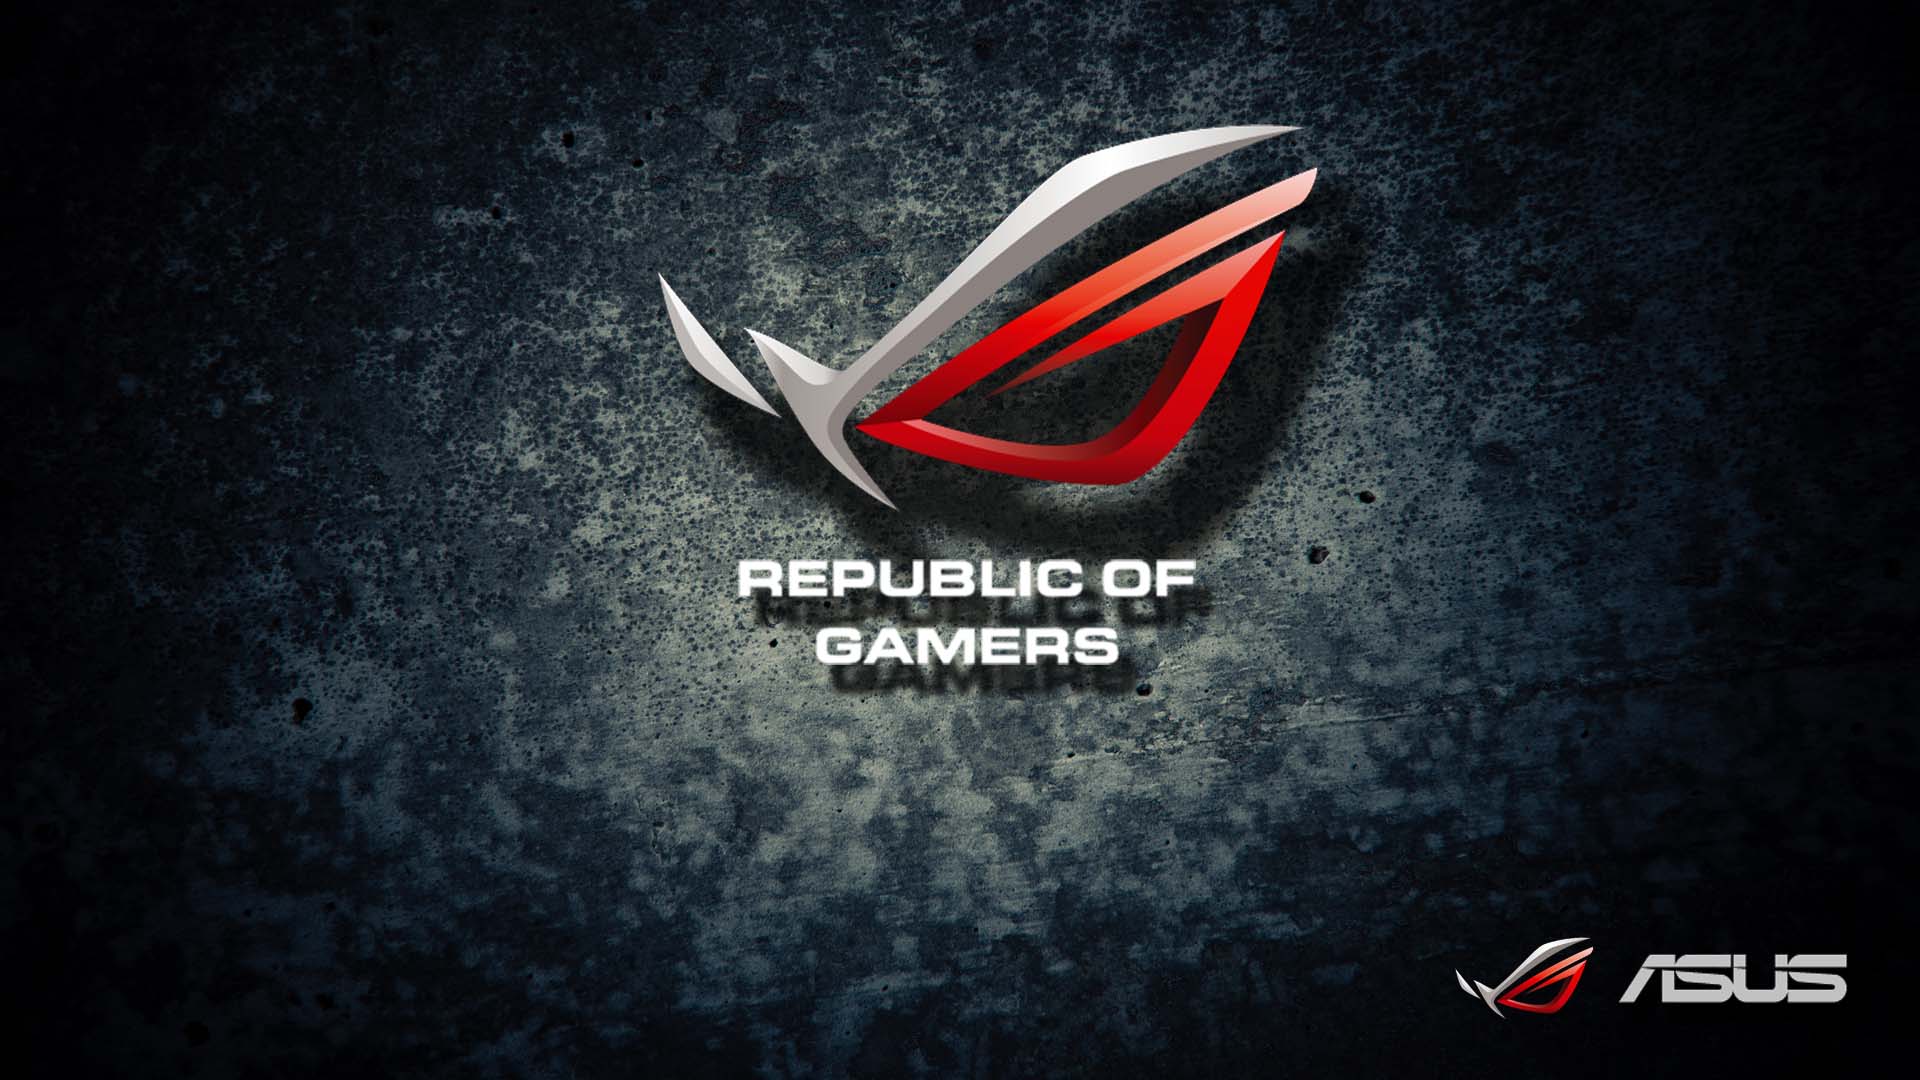 Asus republic of gamers wallpaper 1080p danasrfhtop